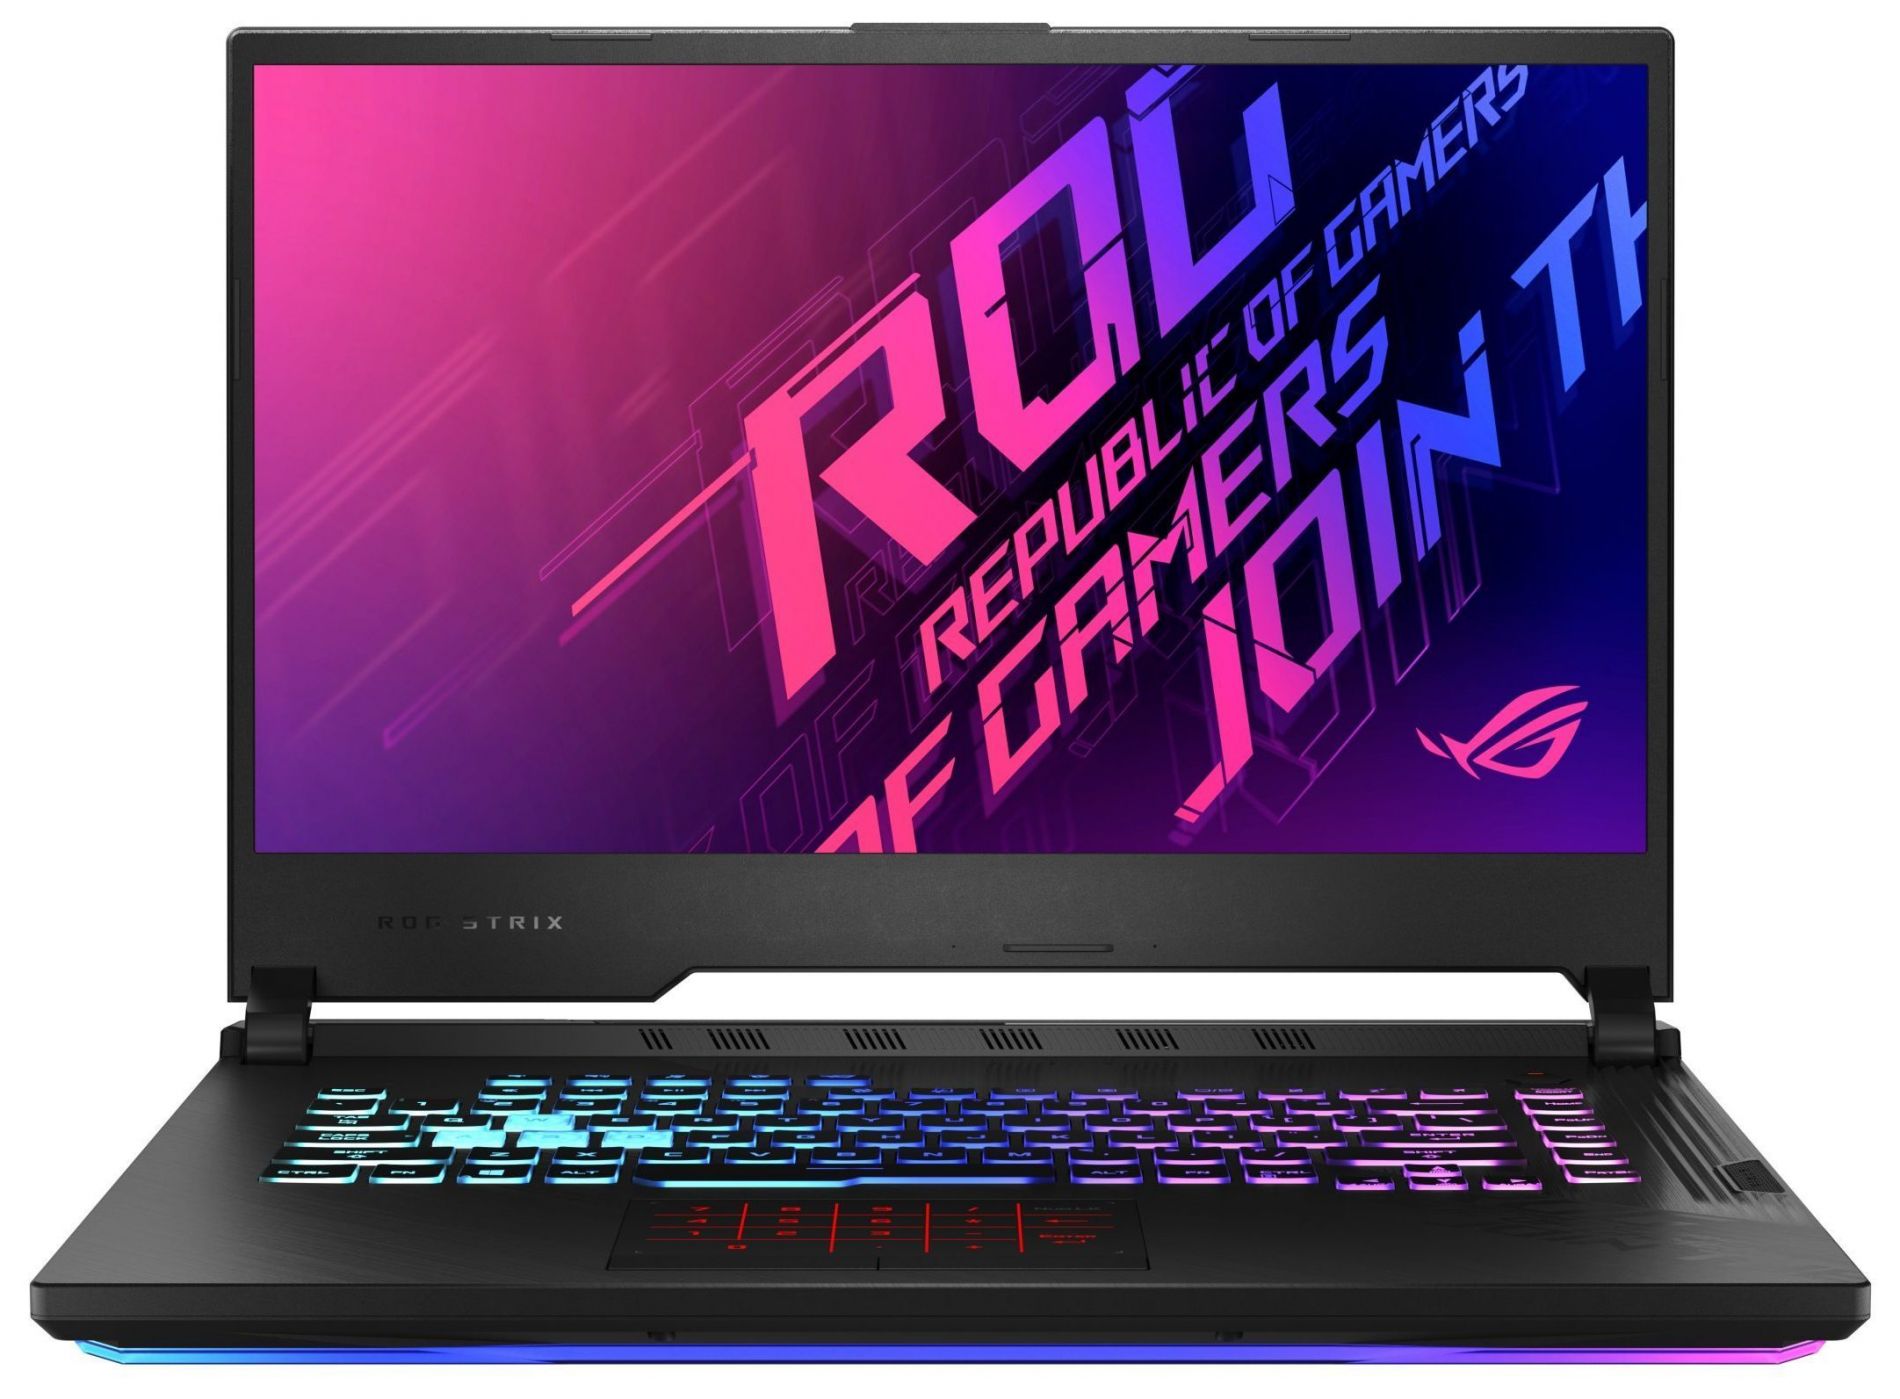 Laptop Asus ROG Strix G15 - G512LI Gaming, Intel Core i7-10750H 2.6GHz, RAM 16GB, Sólido SSD 512GB PCIe, Video 4 GB Nvidia GeForce GTX 1650Ti, LED 15.6" Full HD a 144Hz, Windows 10 Home